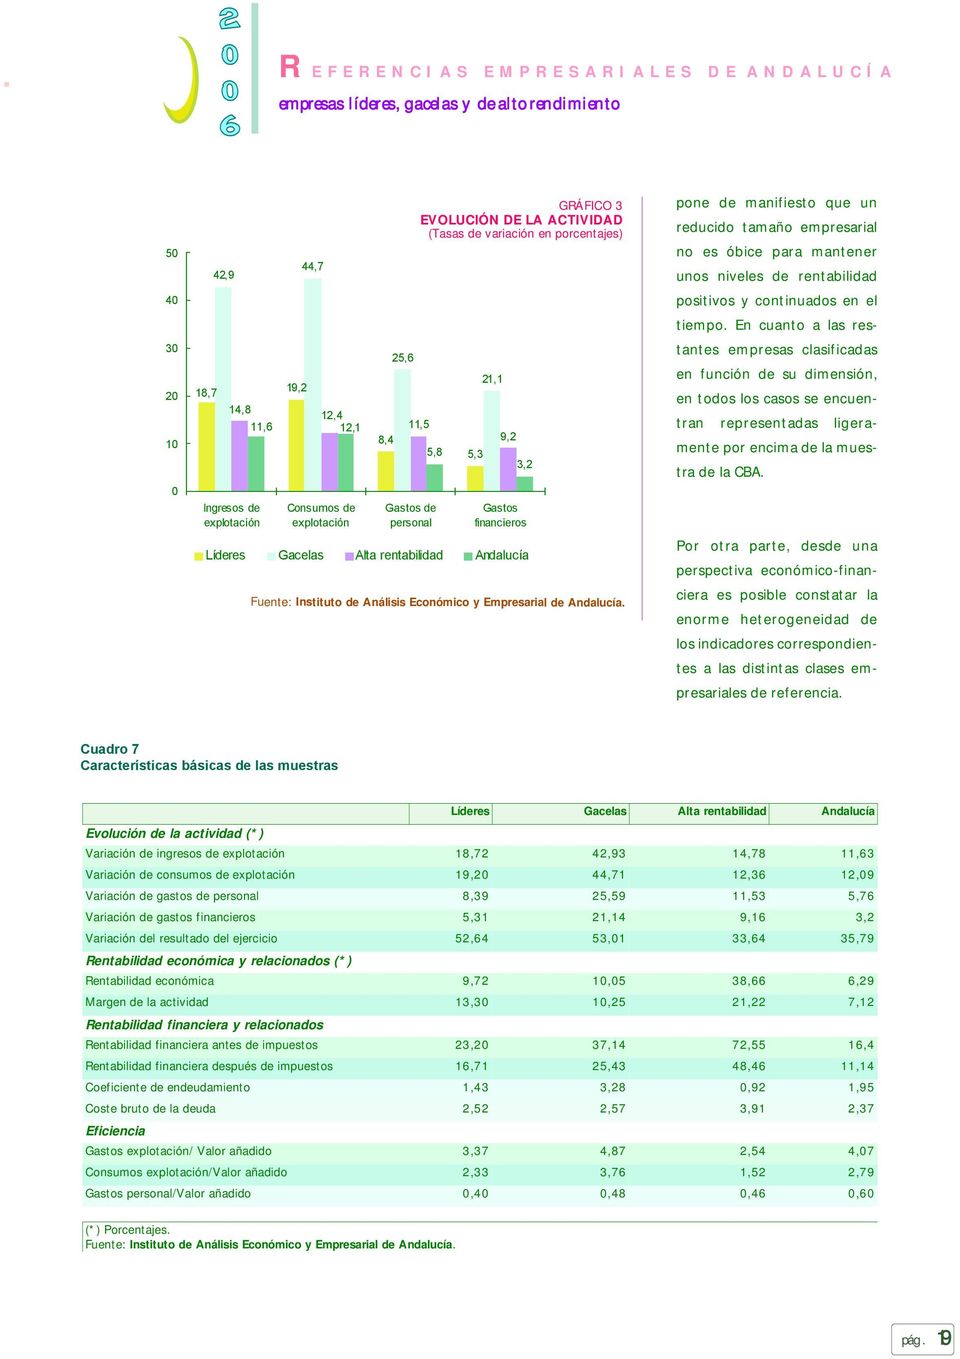 rentabilidad Andalucía Fuente: Instituto de Análisis Económico y Empresarial de Andalucía.